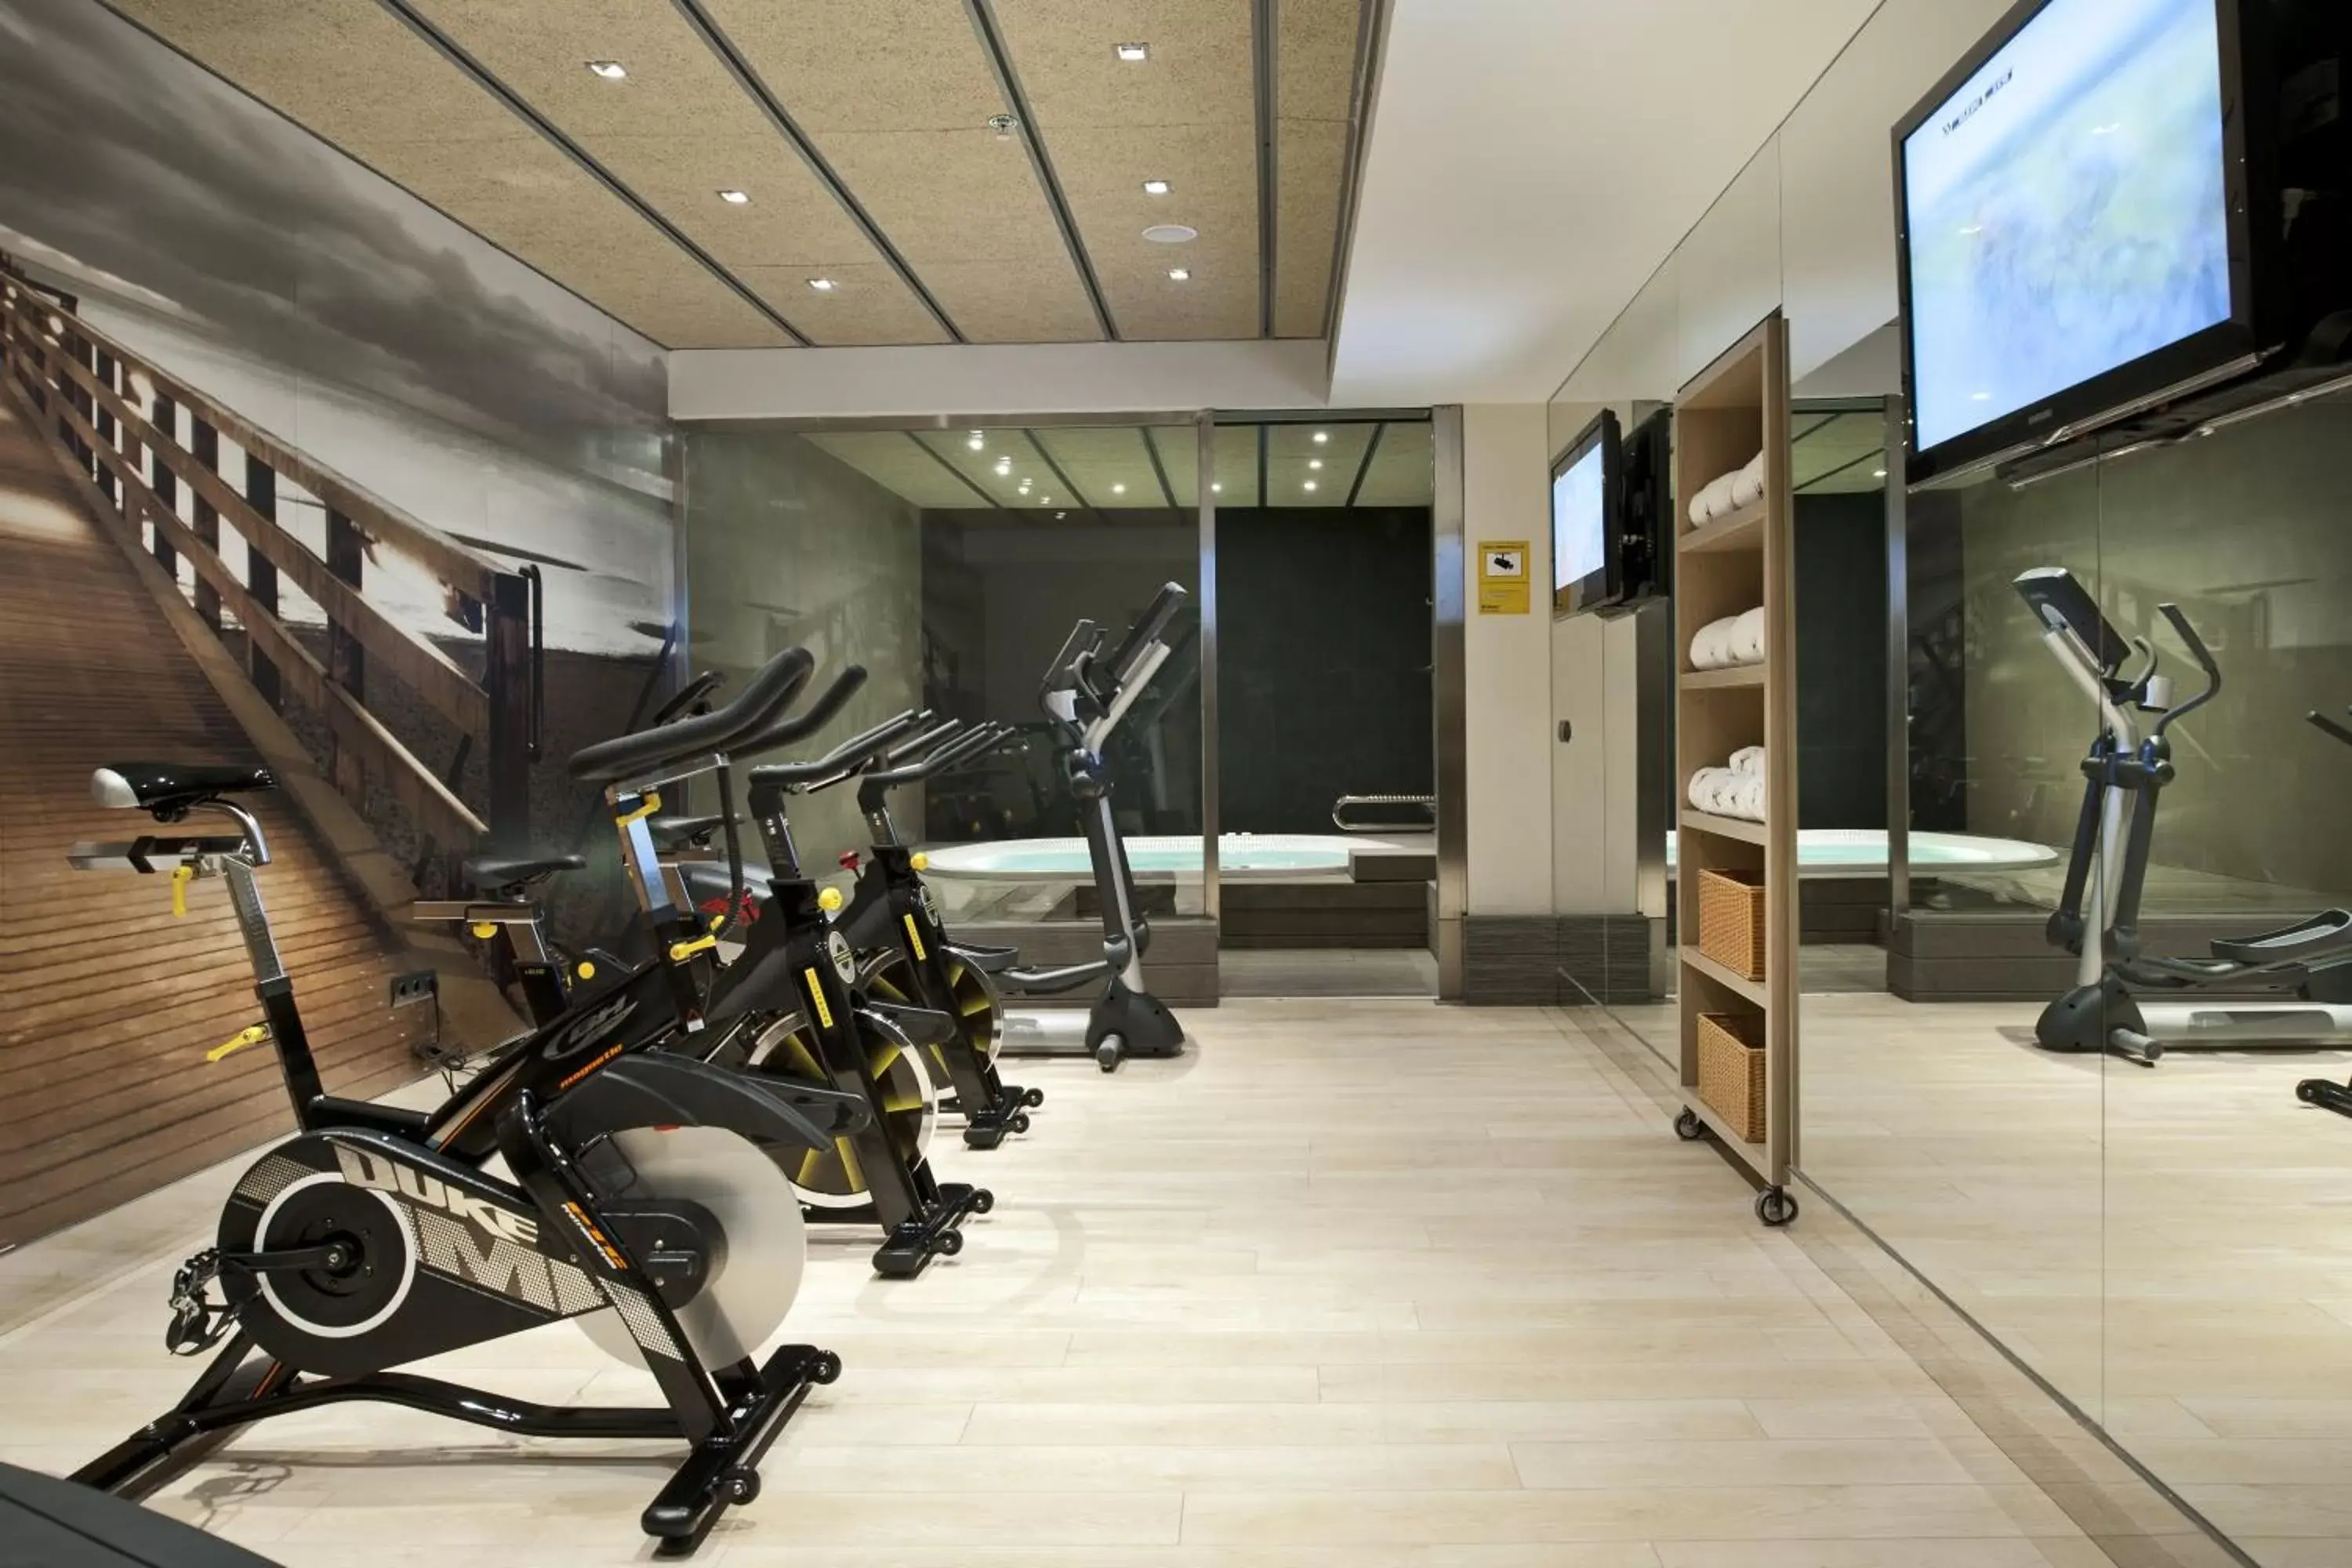 Fitness centre/facilities, Fitness Center/Facilities in Catalonia Plaza Mayor